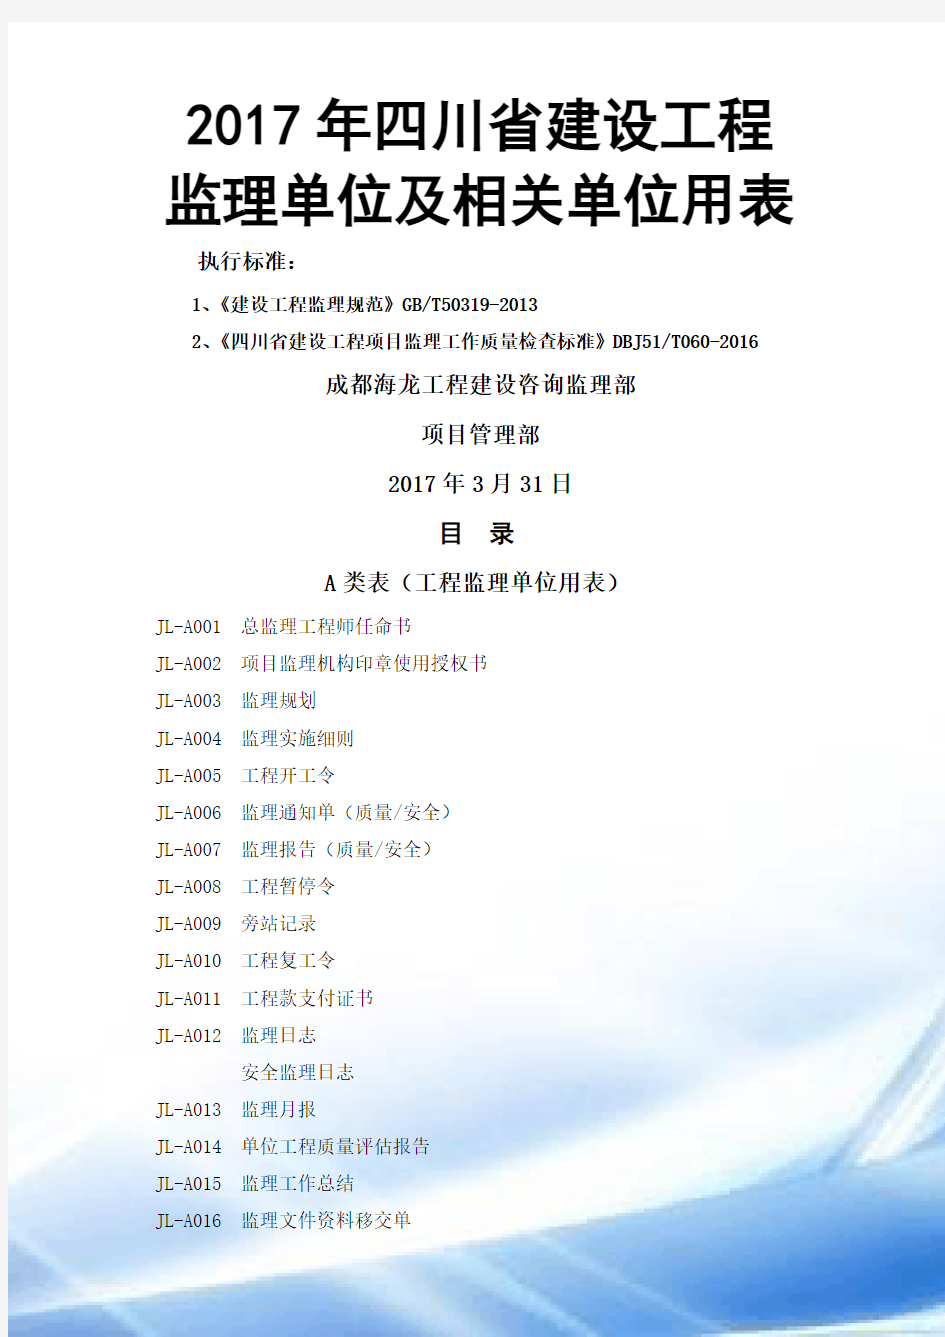 2017年四川省建设工程监理单位及相关单位用表